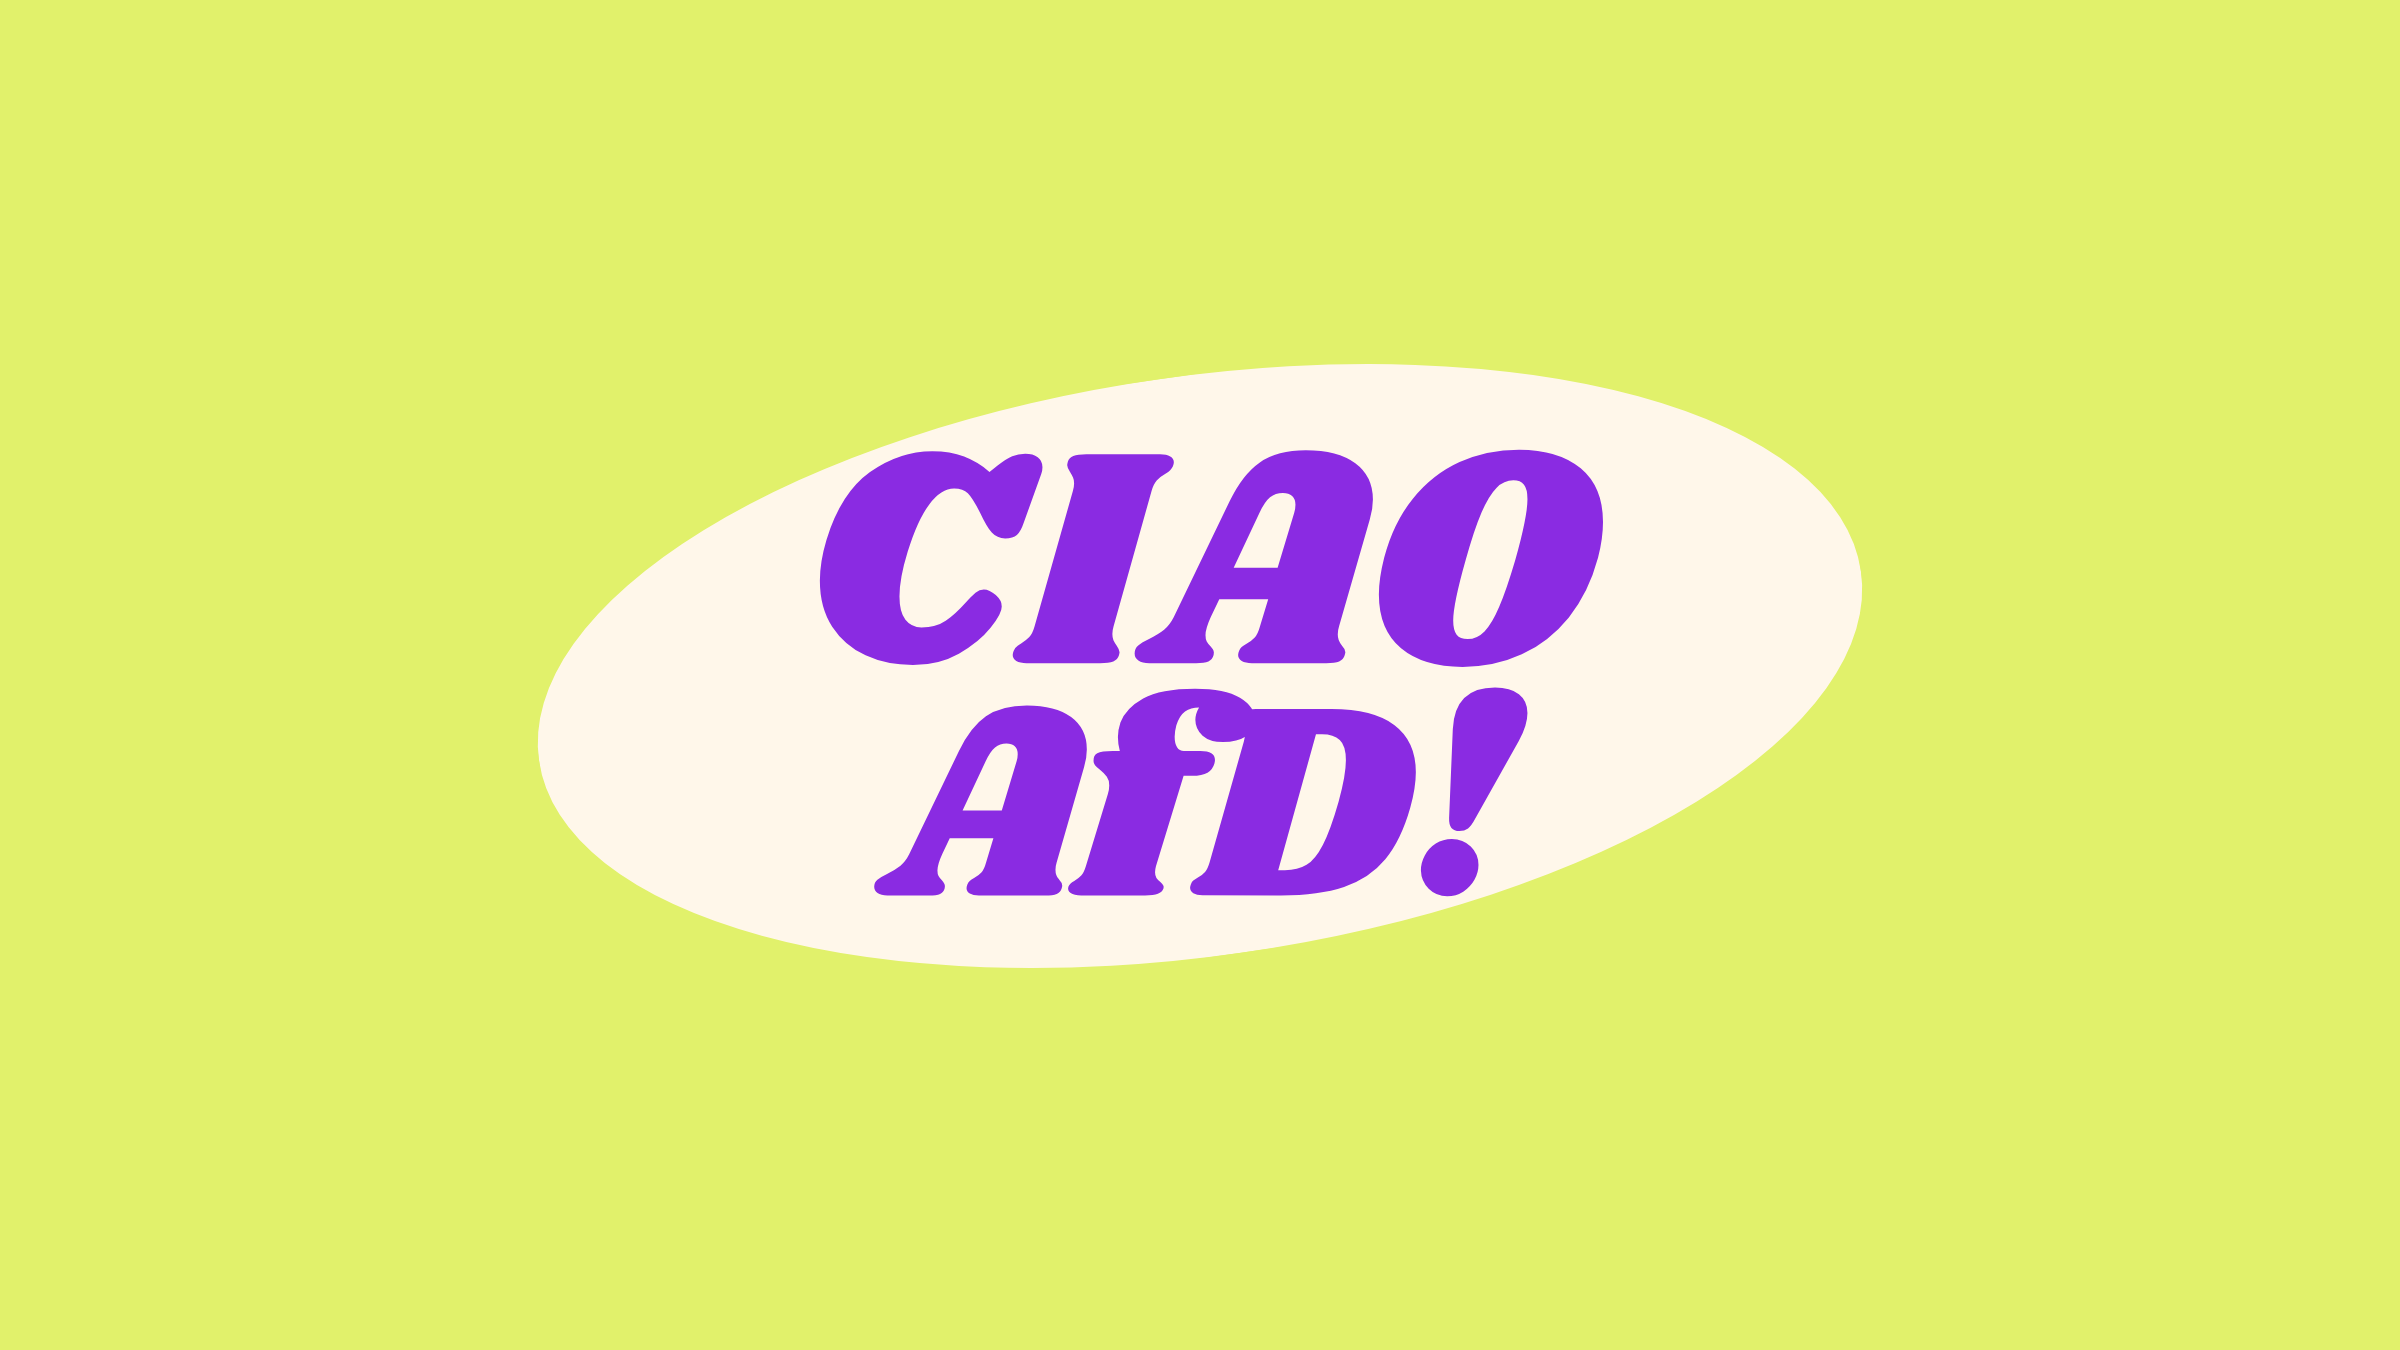 Der Schriftzug "Ciao AfD" in lila Schrift auf neongelbem Hintergrund.